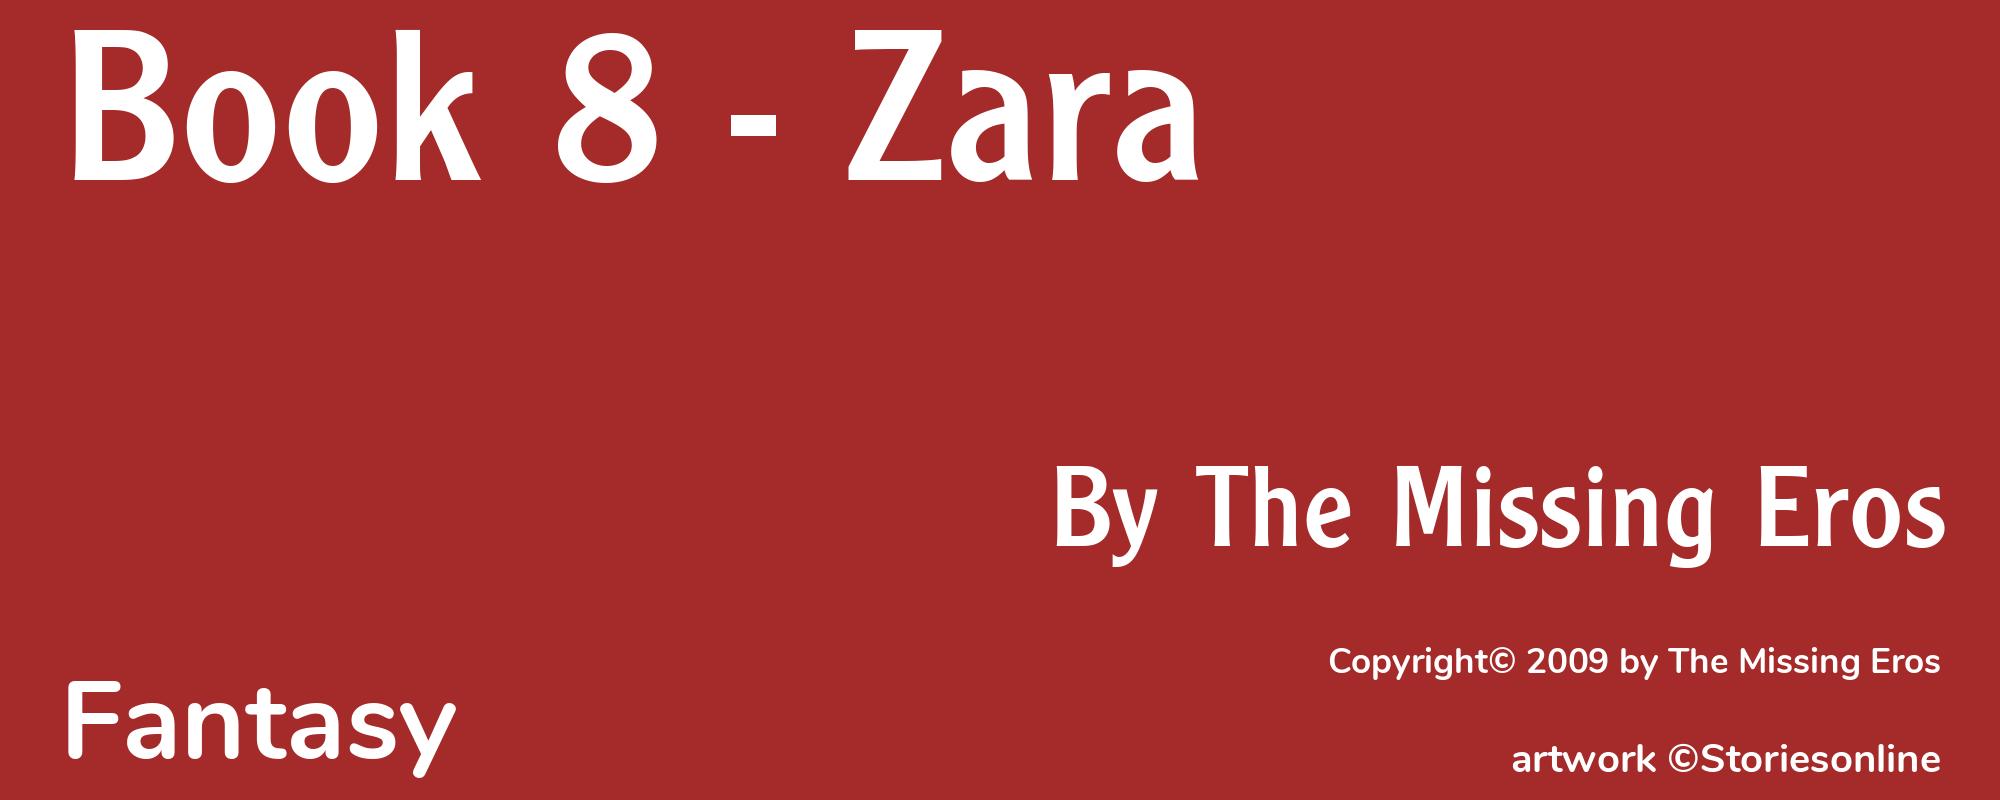 Book 8 - Zara - Cover